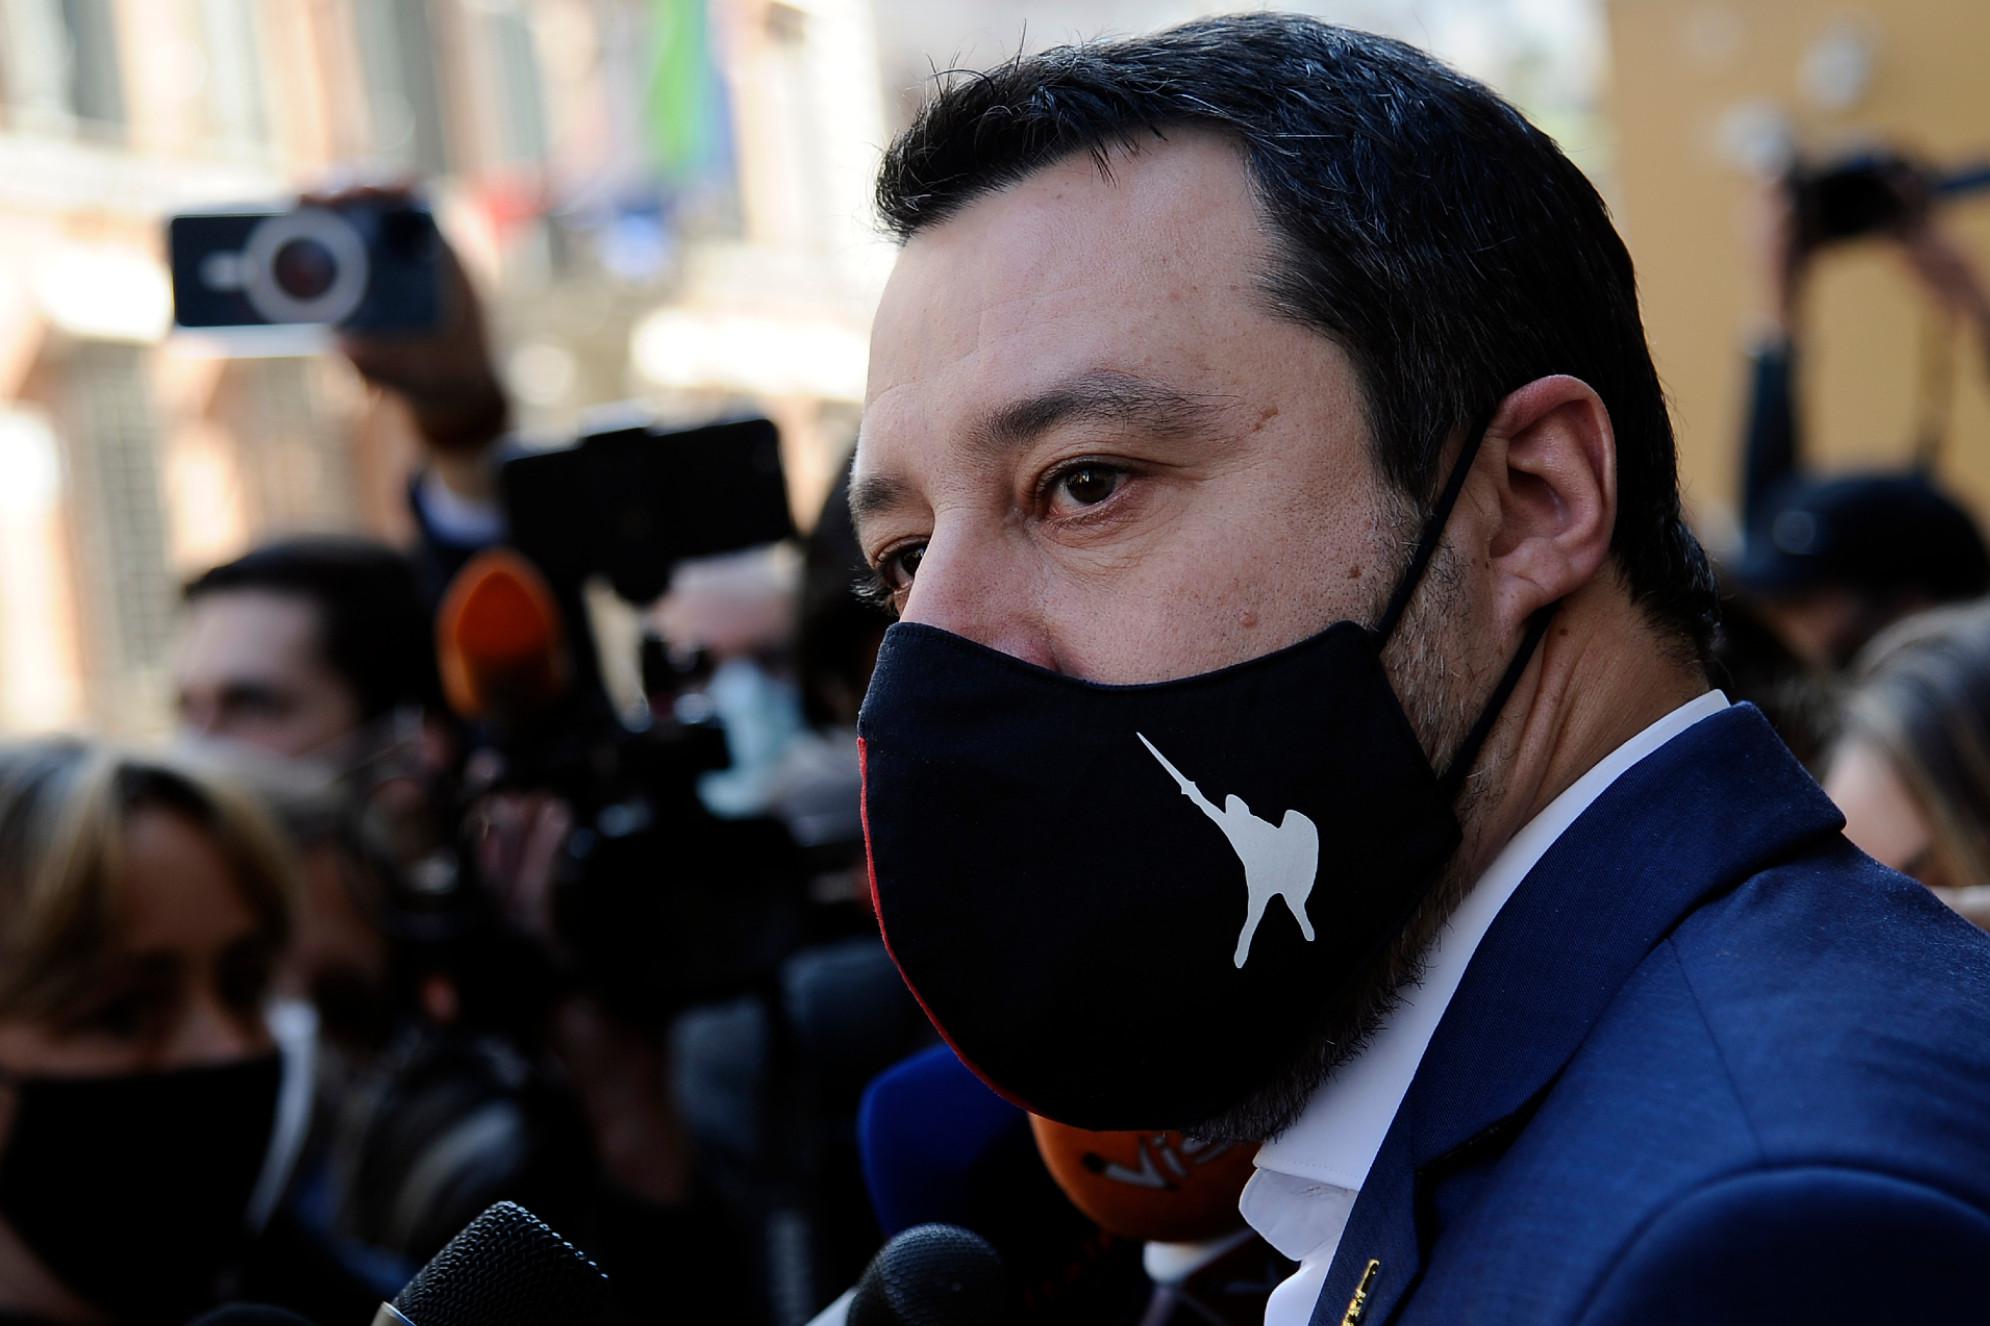 Caso Gregoretti, Salvini in aula: "Ho fatto il mio dovere"